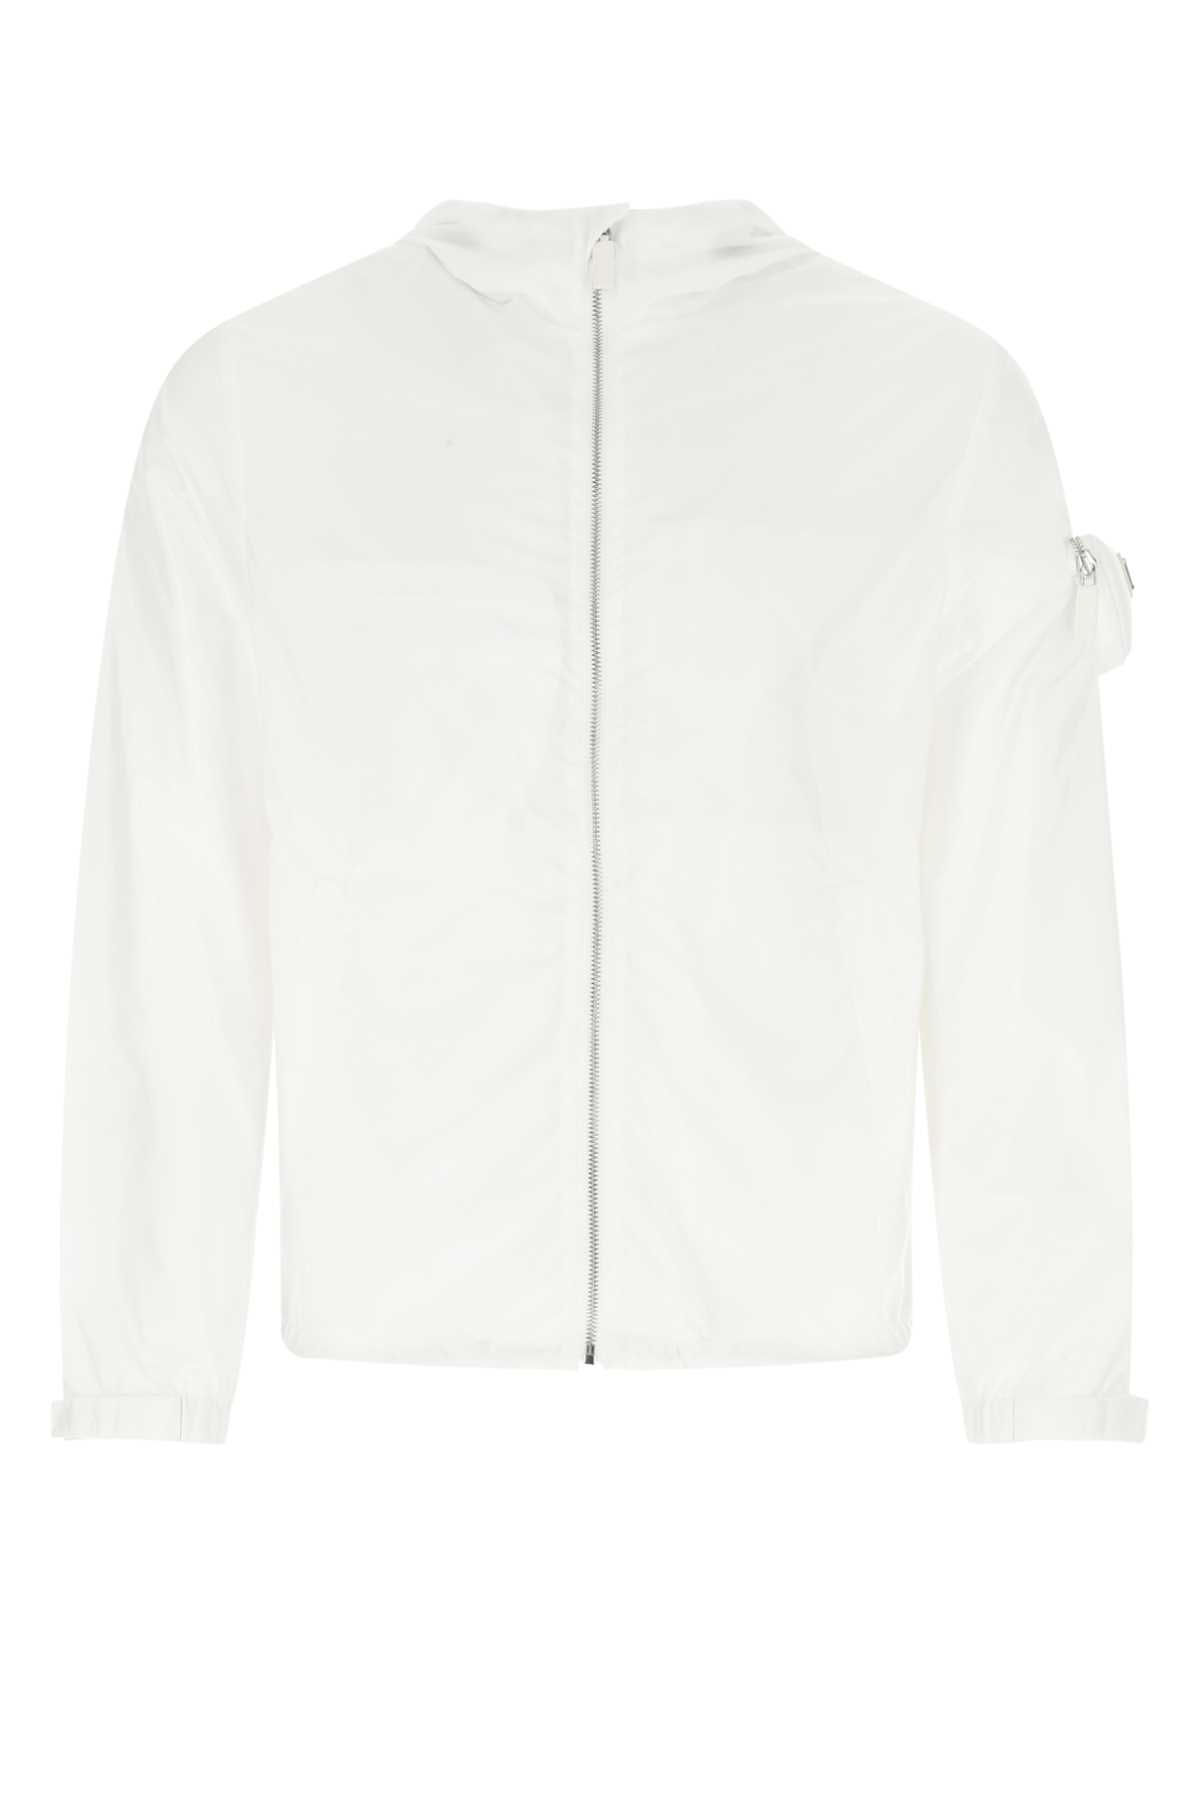 Prada White Re-nylon Jacket